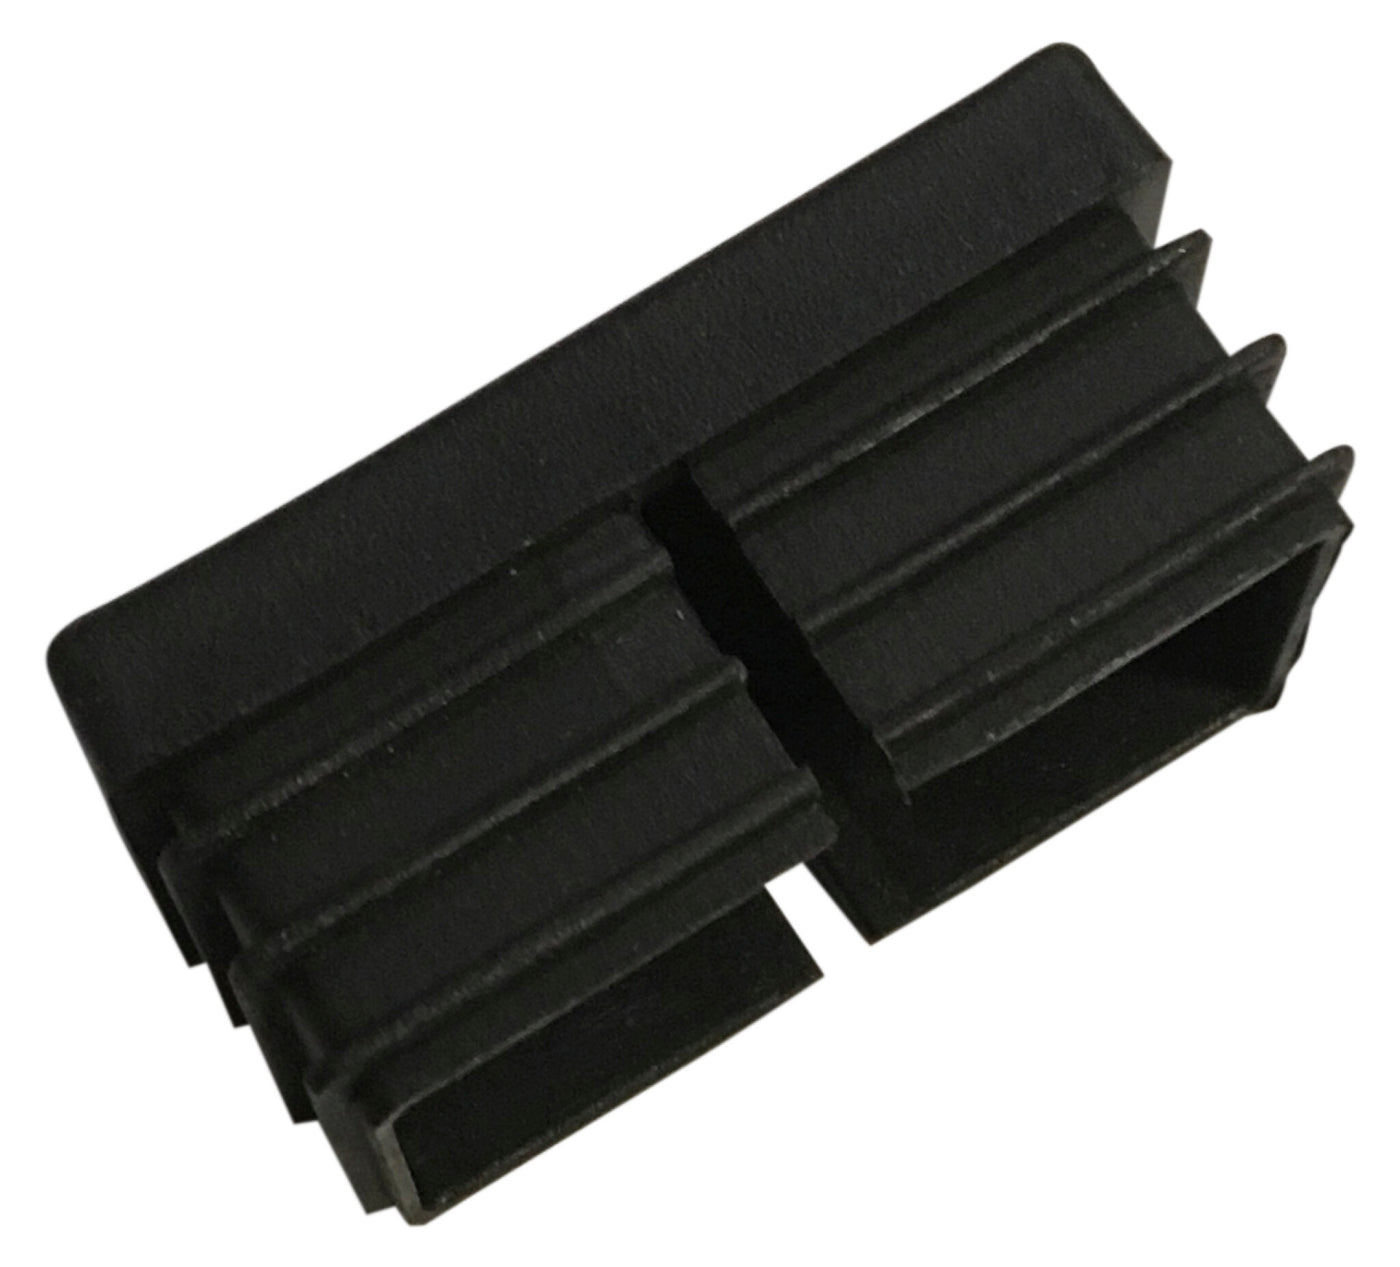 PLASTIC CAPS FOR LEGS F/629101